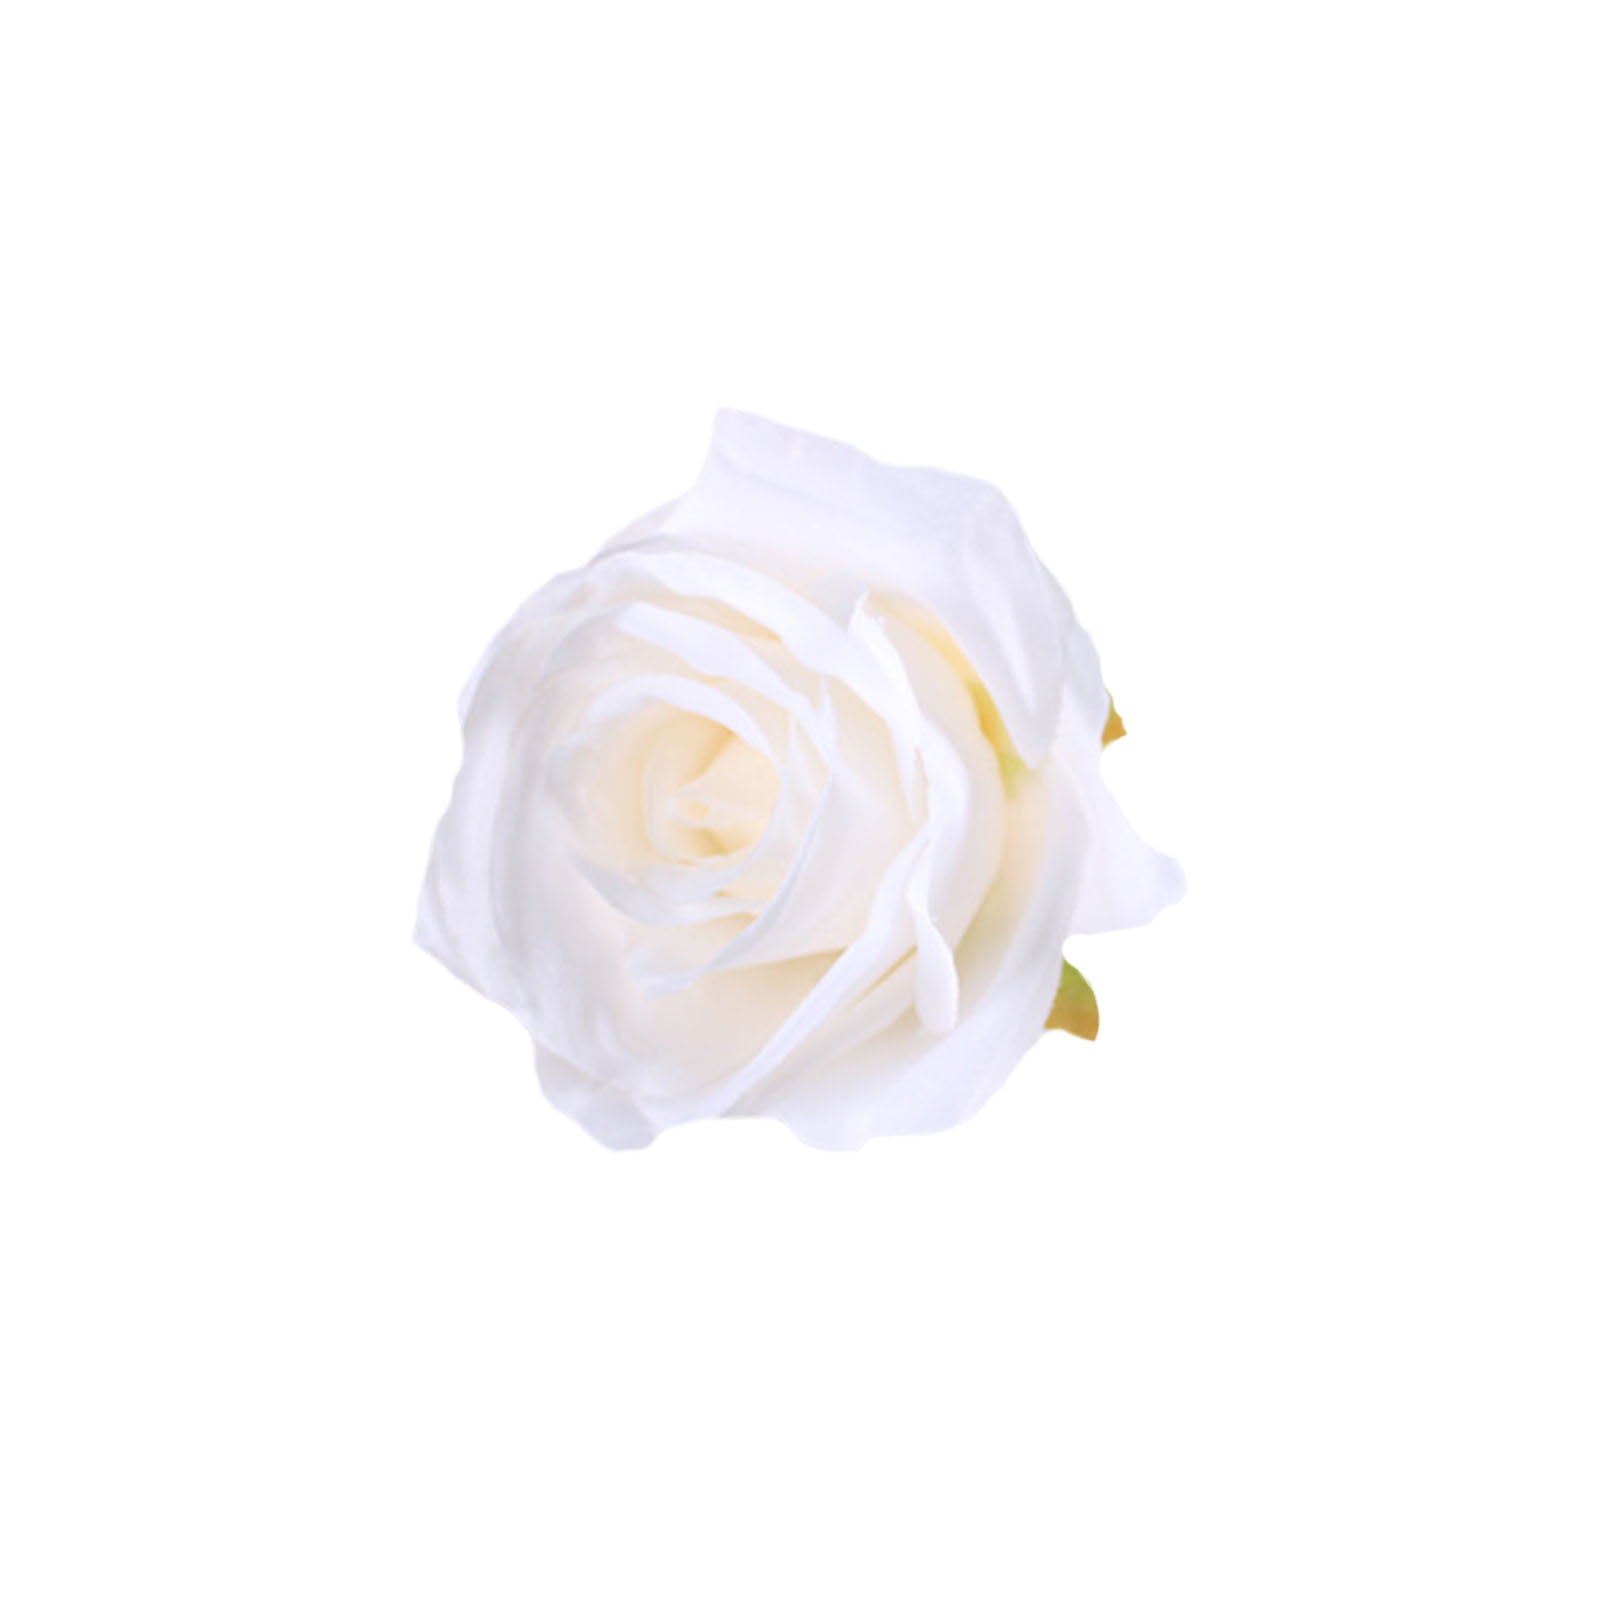 9cm Flocked Velvet Long Stem Tea Rose x 1 3 Or 6 Stems Flower Wedding Display 